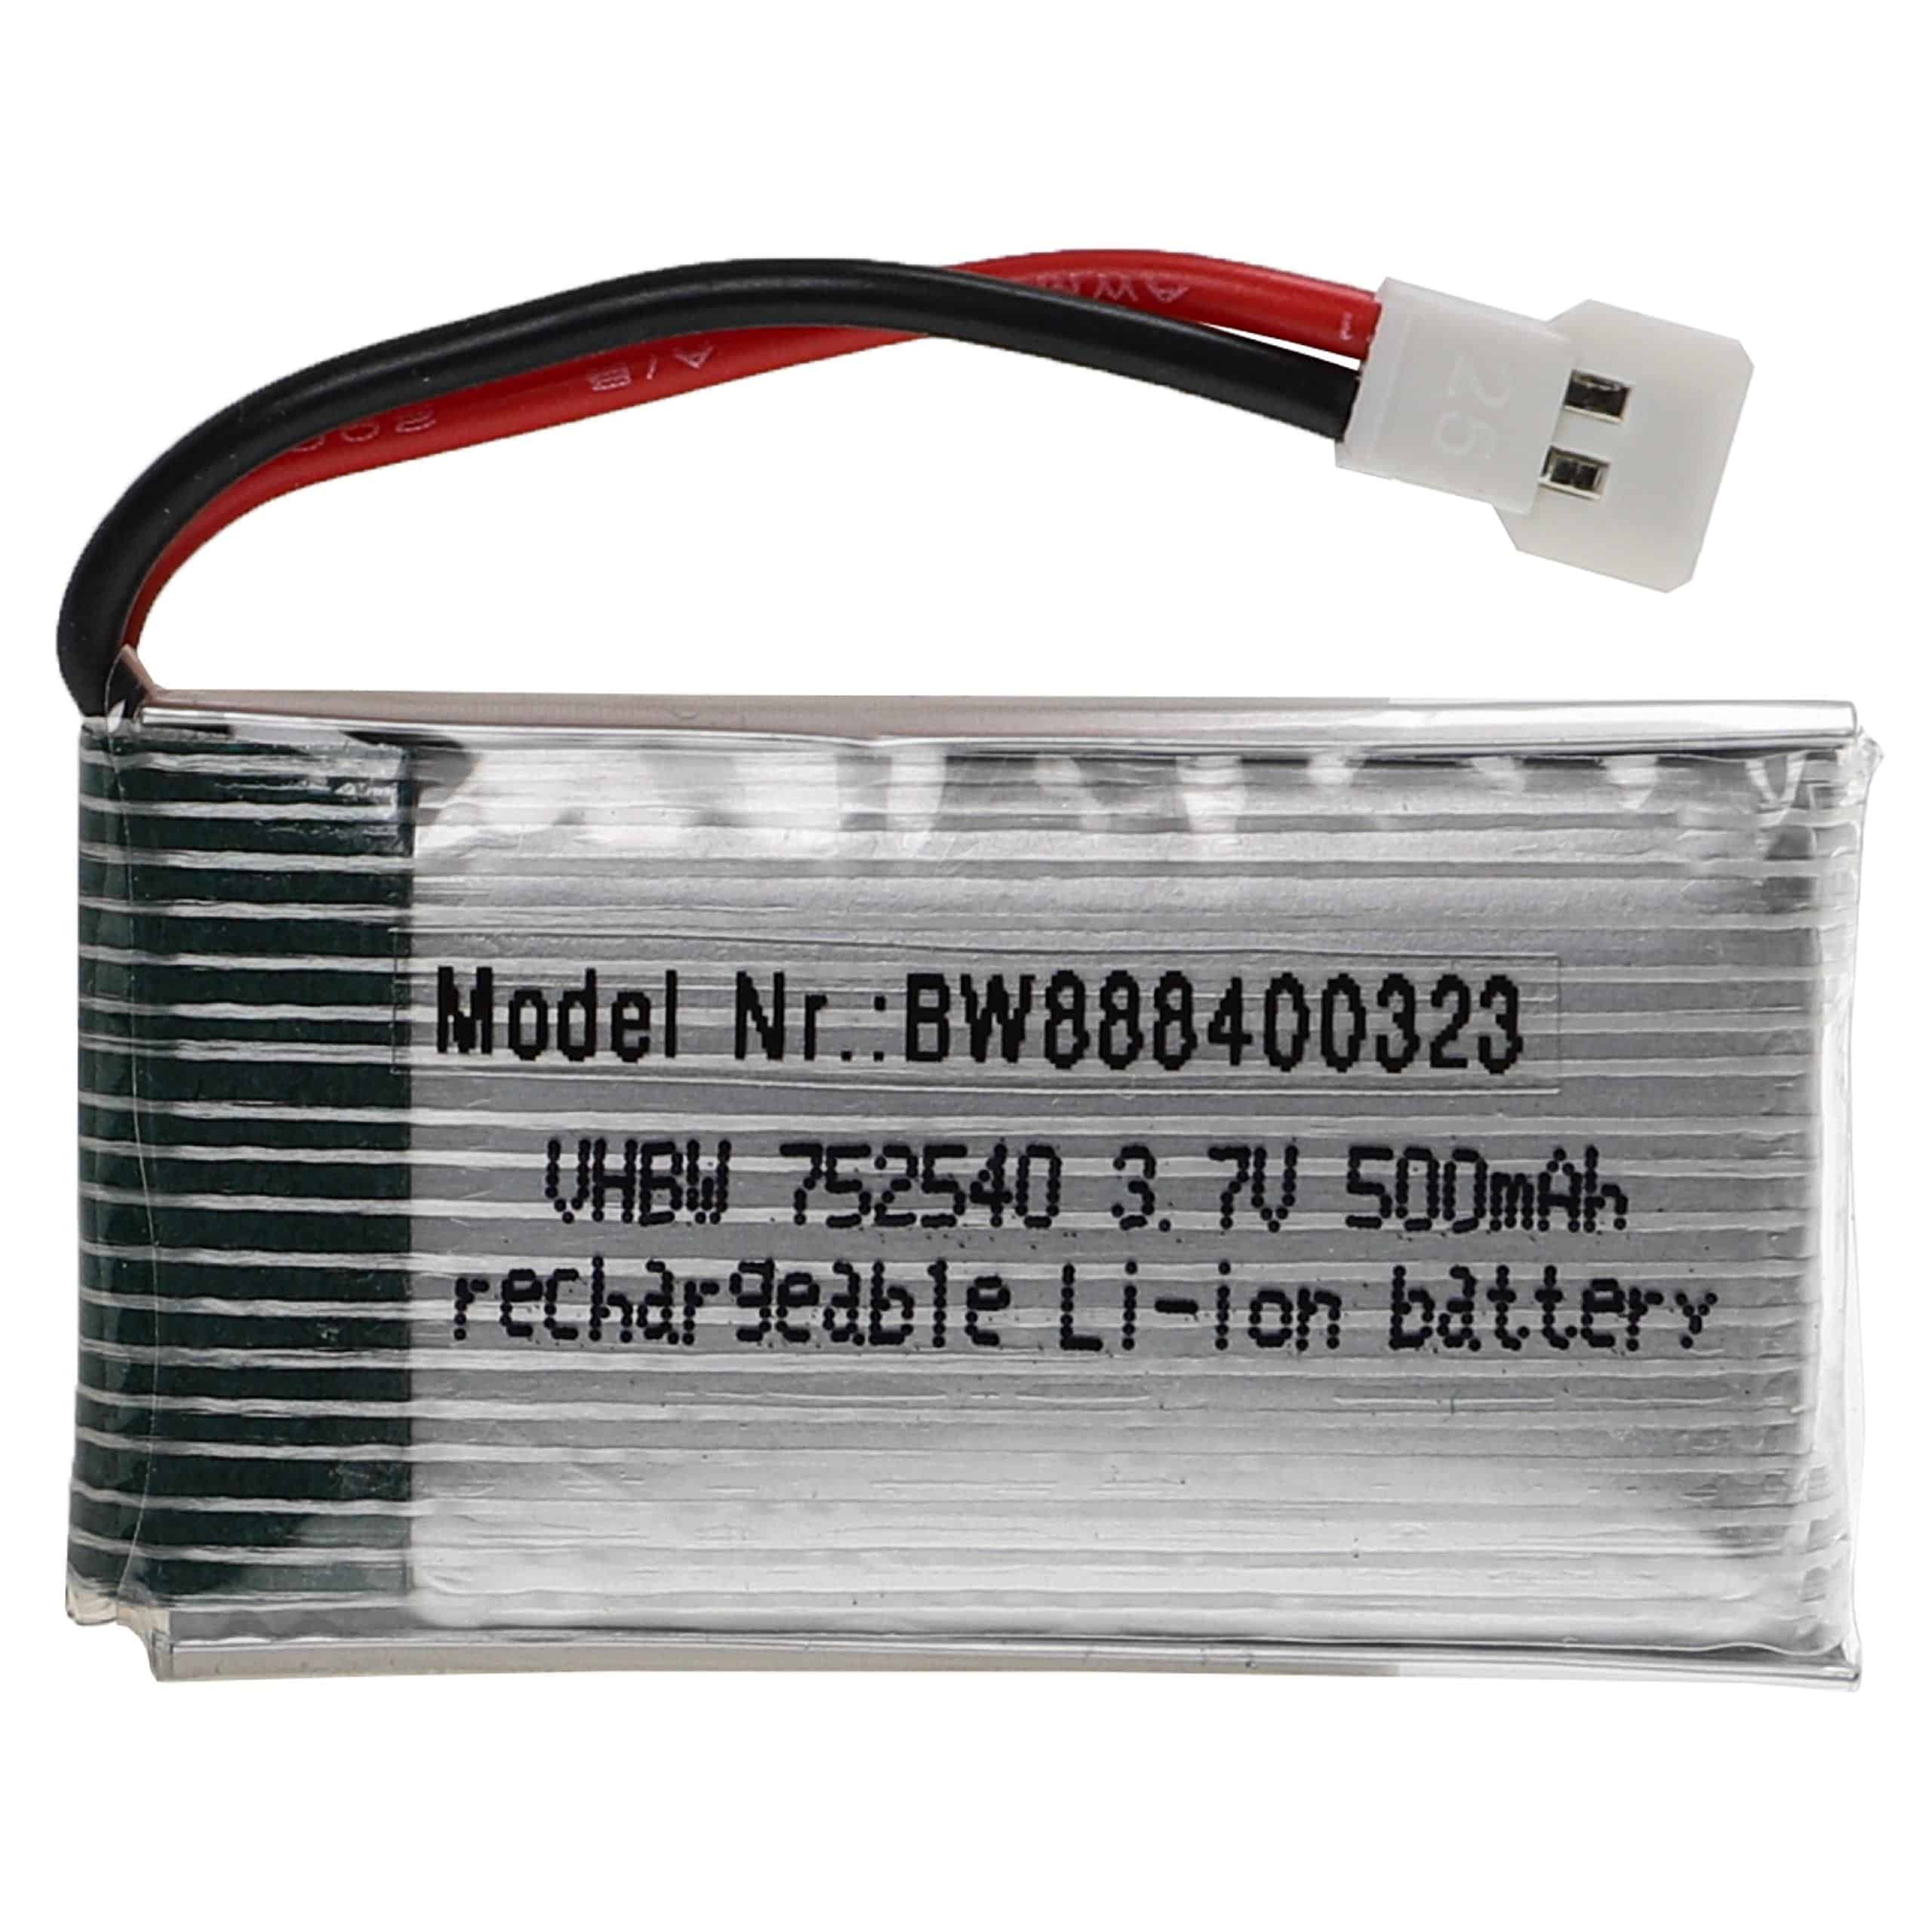 Batterie pour modèle radio-télécommandé - 500mAh 3,7V Li-polymère, XH 2.54 2P